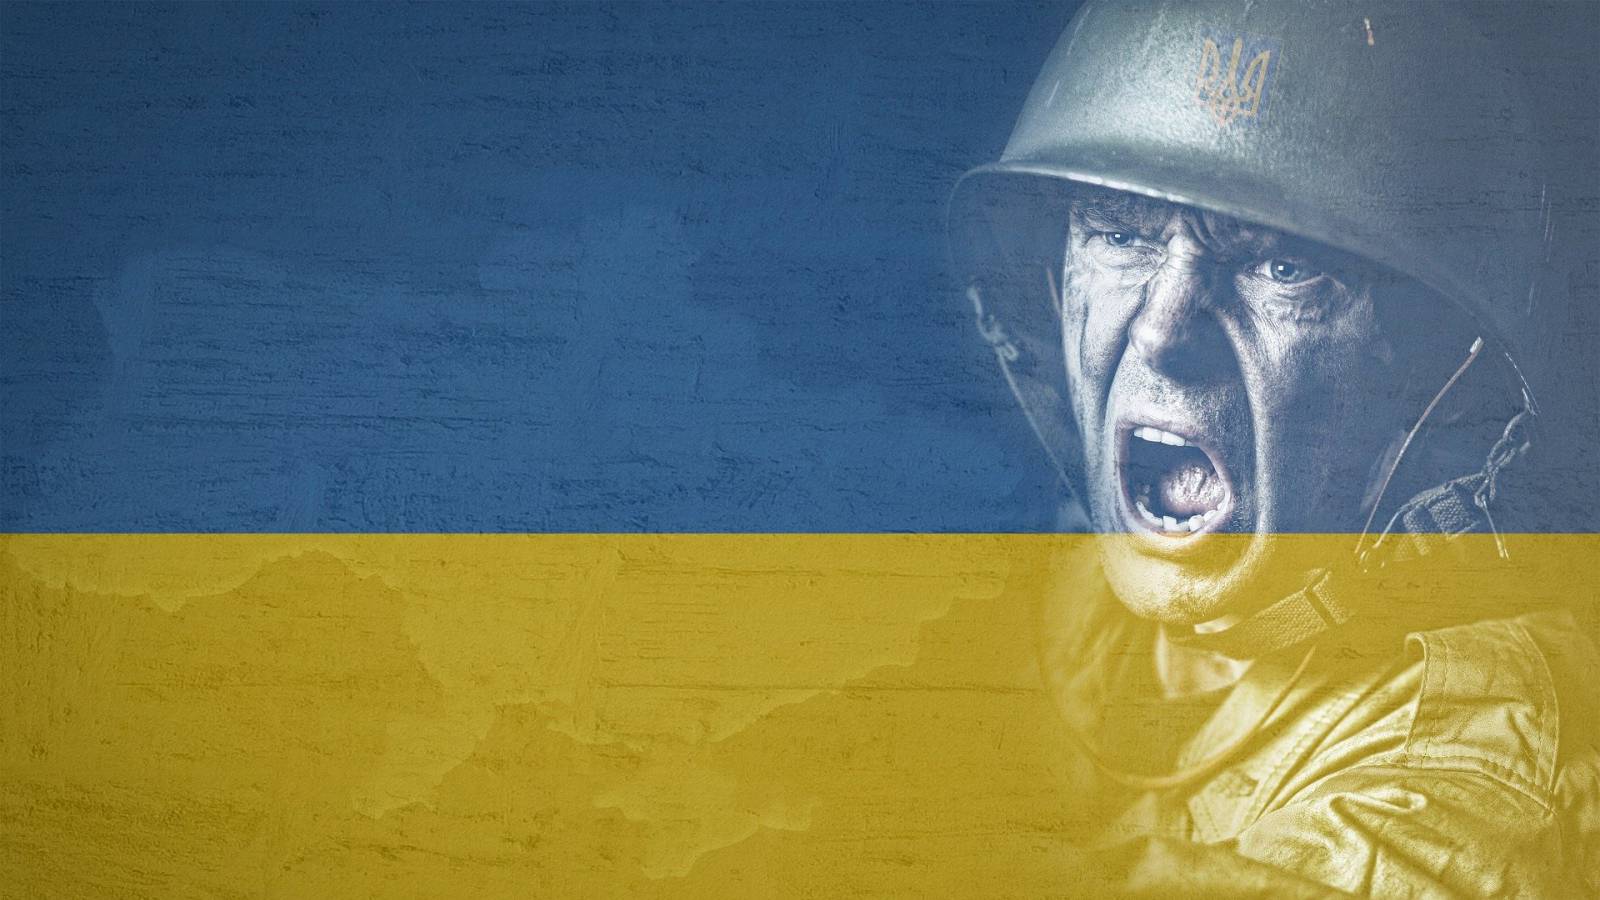 He aquí cuántos prisioneros de guerra Ucrania liberó del cautiverio ruso